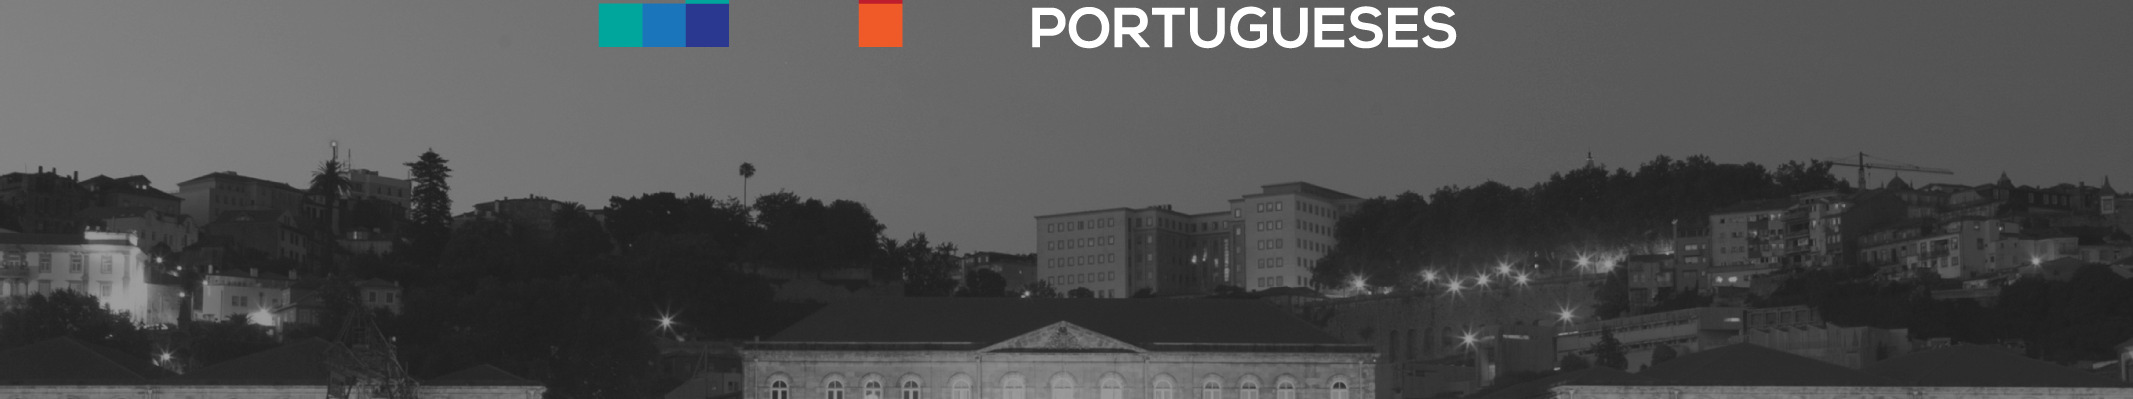 Aconselhamento Psicológico no Ensino Superior Português: Que Necessidades?